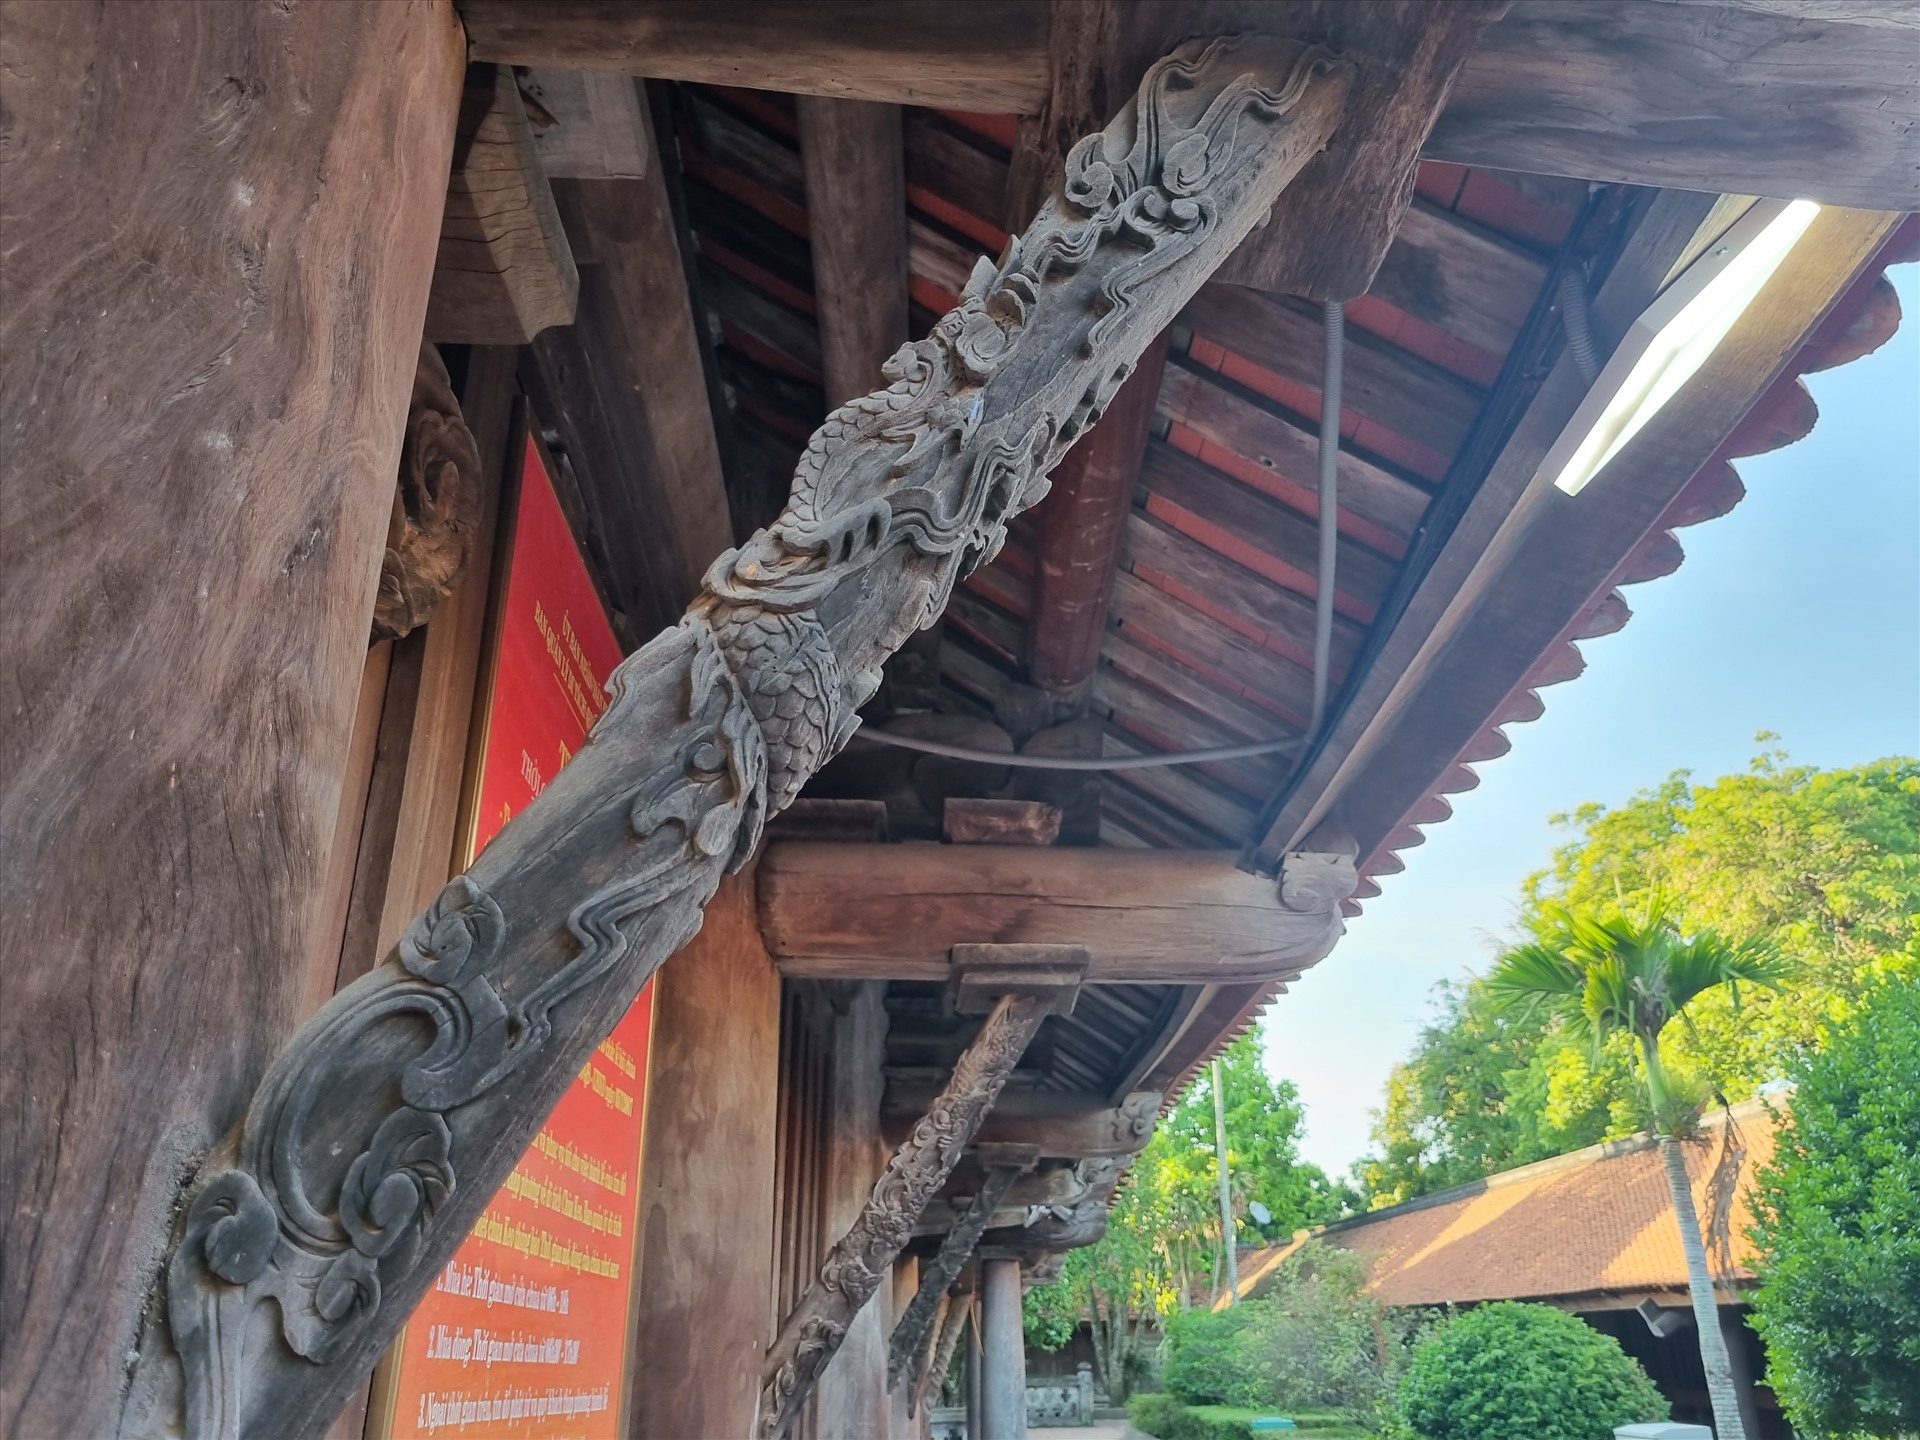 Chiêm ngưỡng kiến trúc ngôi chùa gỗ lim gần 400 tuổi ở Thái Bình